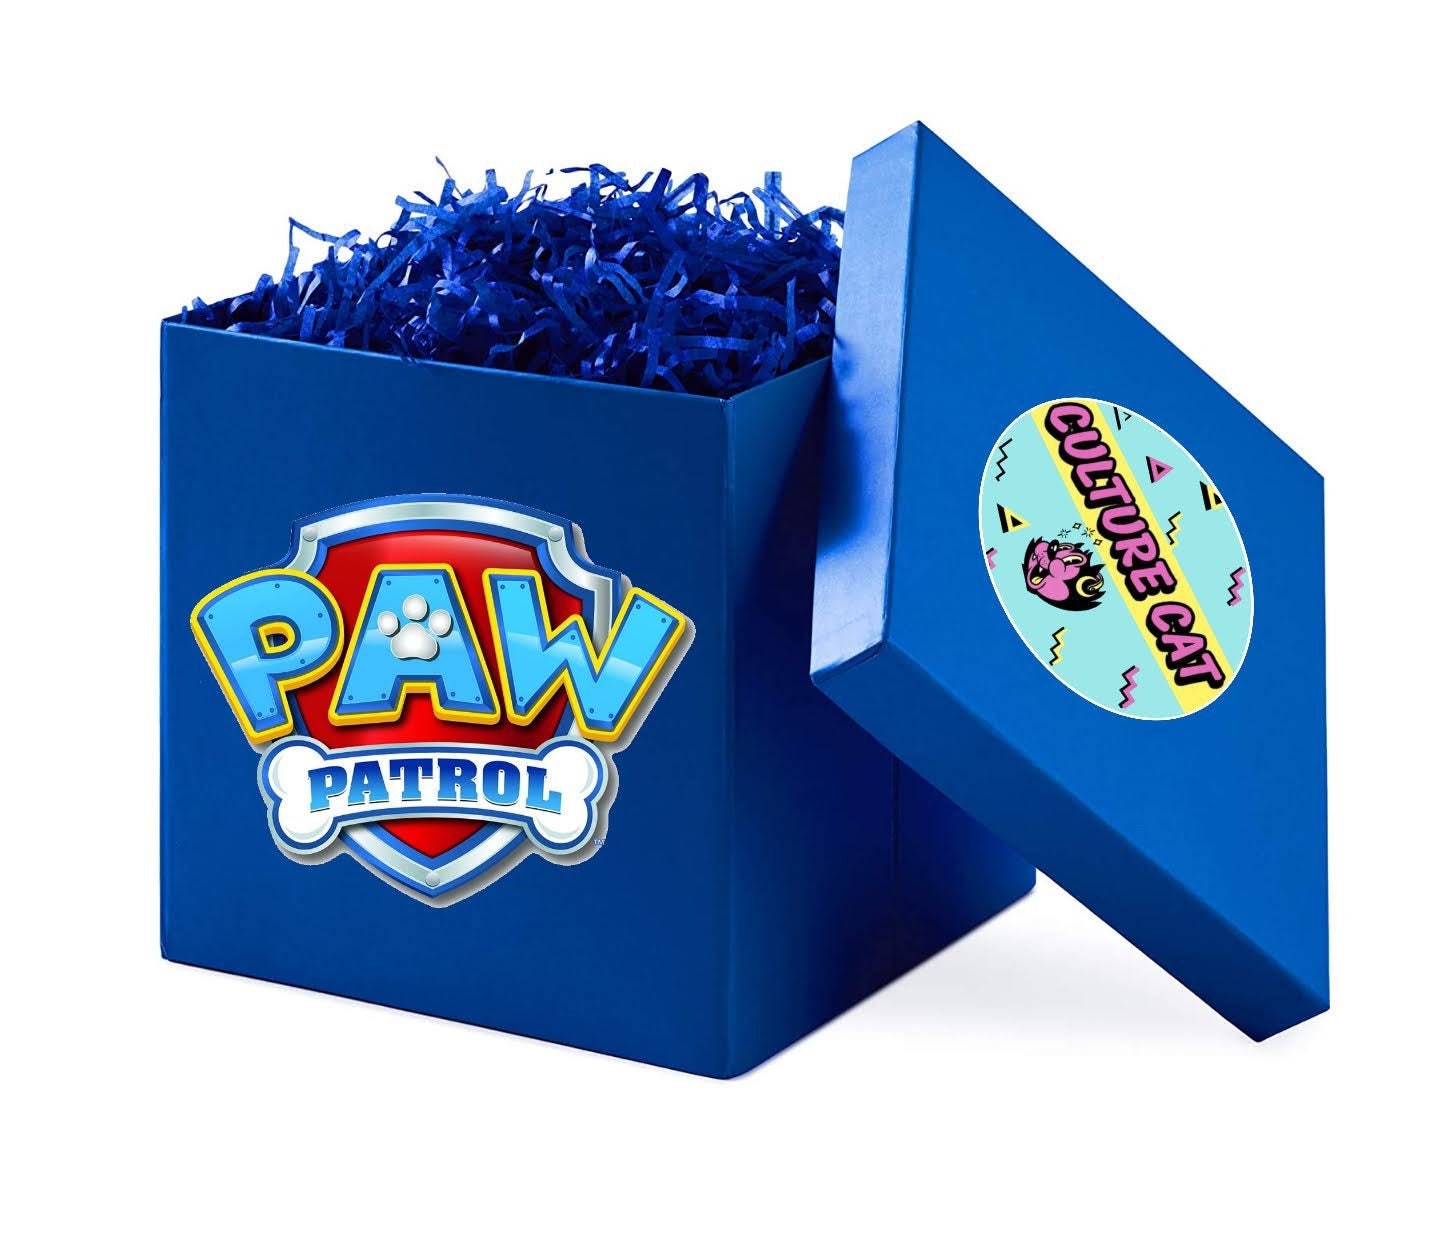 Paw Patrol Box Mystery Box Gift | Etsy